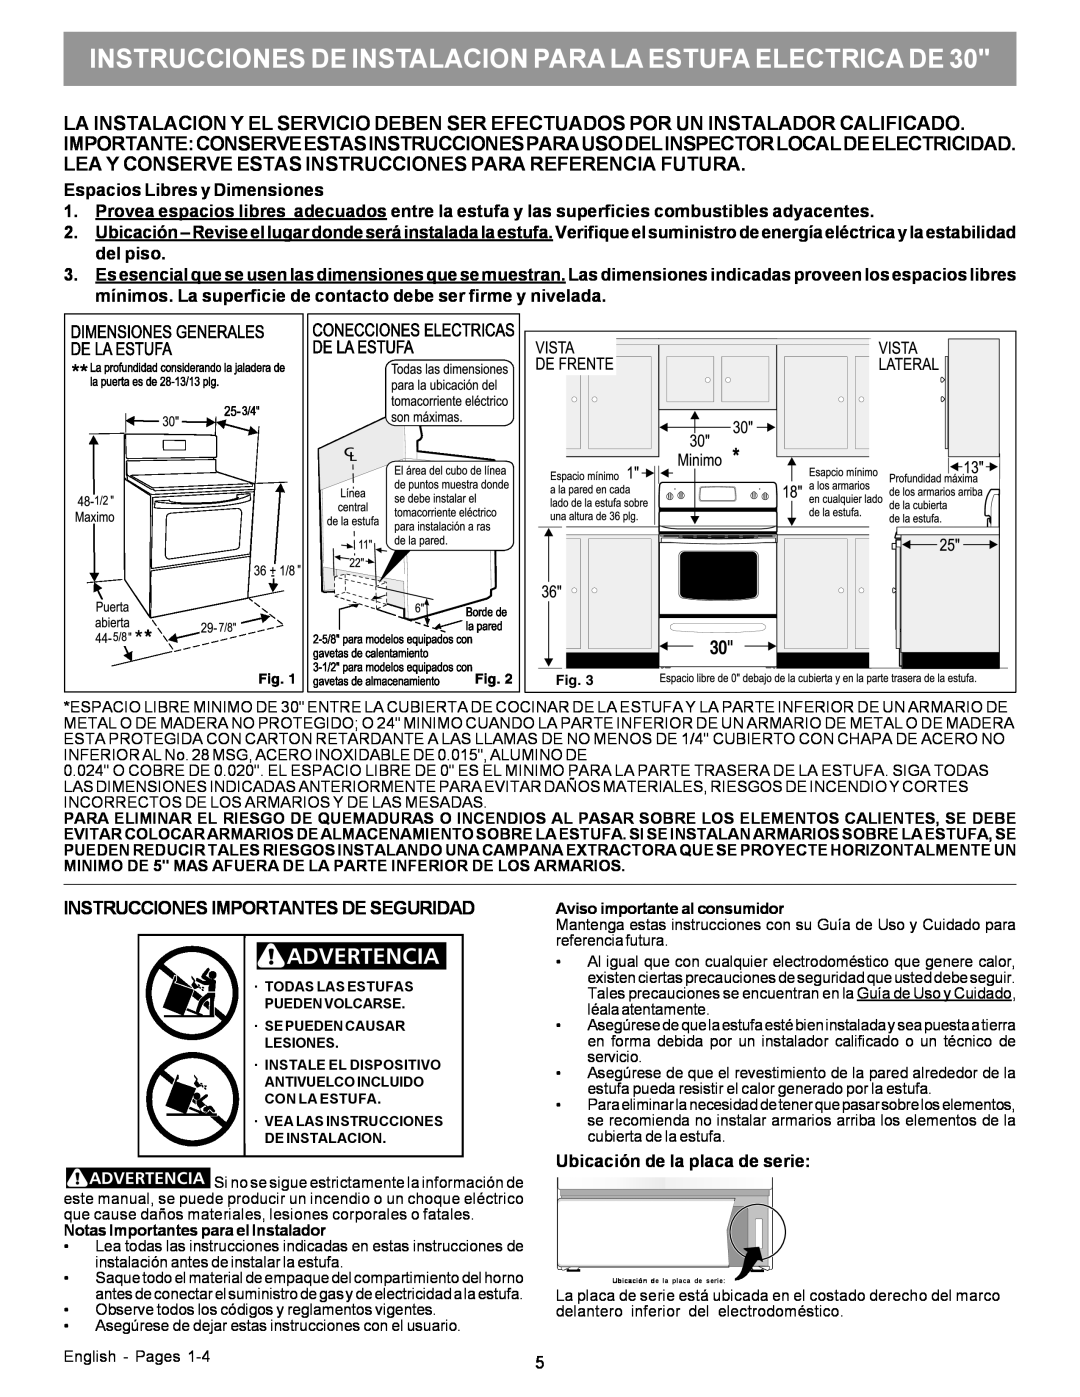 Frigidaire 316454912 Instrucciones De Instalacion Para La Estufa Electrica De, Instrucciones Importantes De Seguridad 